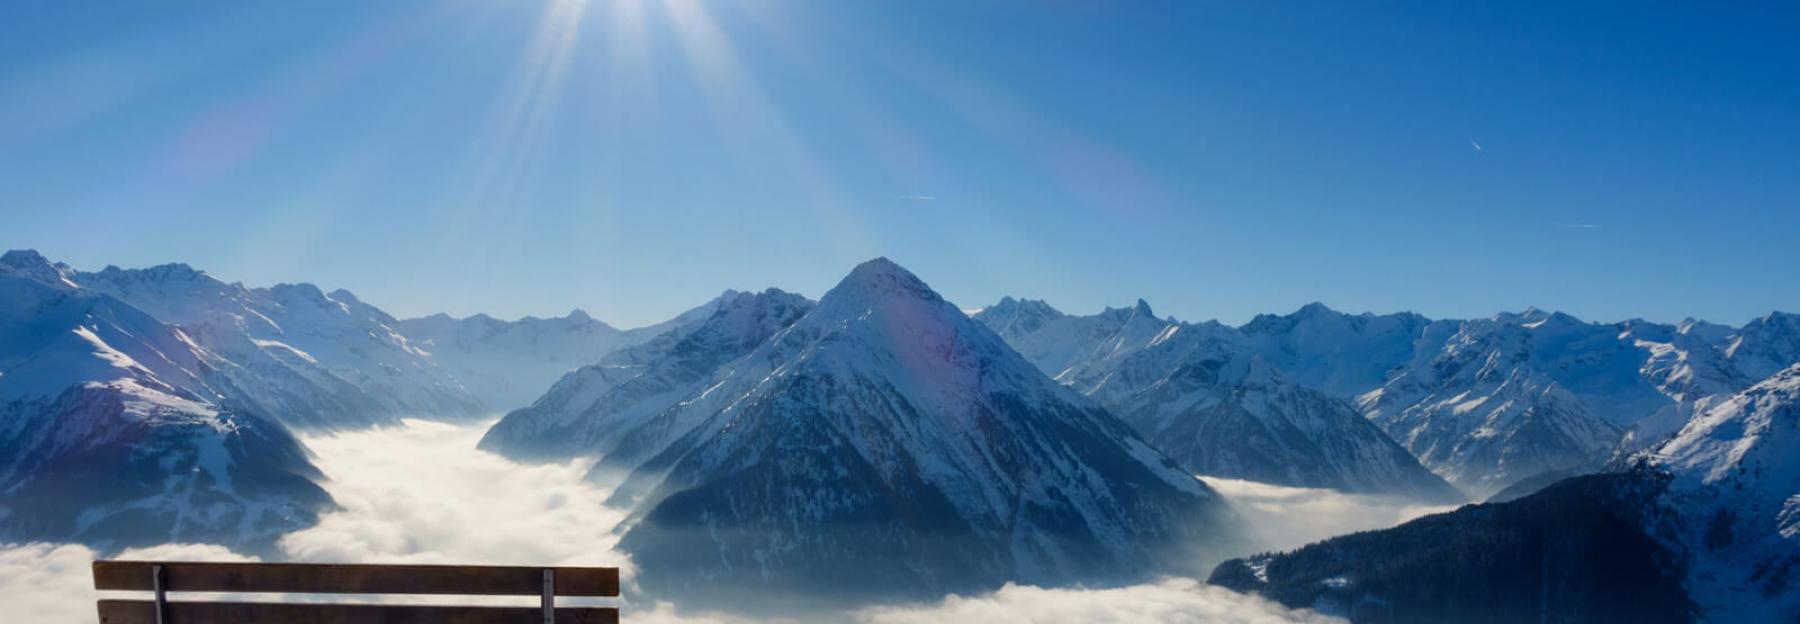 Bank in den schneebedeckten Bergen mit Ausblick auf Sonne und Gipfel